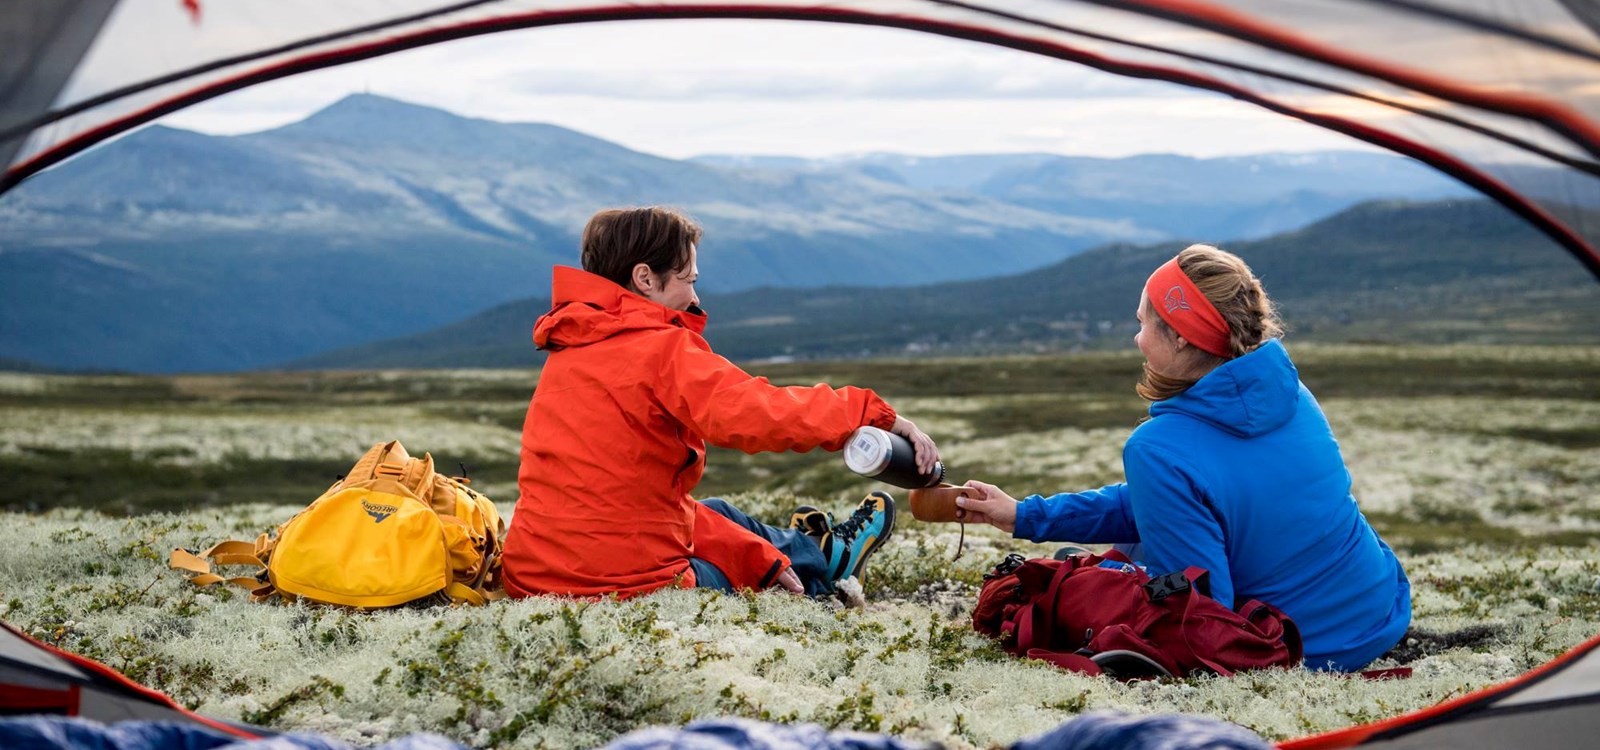 Annette er mykje til fjells og har mellom anna stilt opp på foto-oppdrag for sin nye arbeidsgjevar denne sumaren. Foto: Ynge Ask/Mountains of Norway